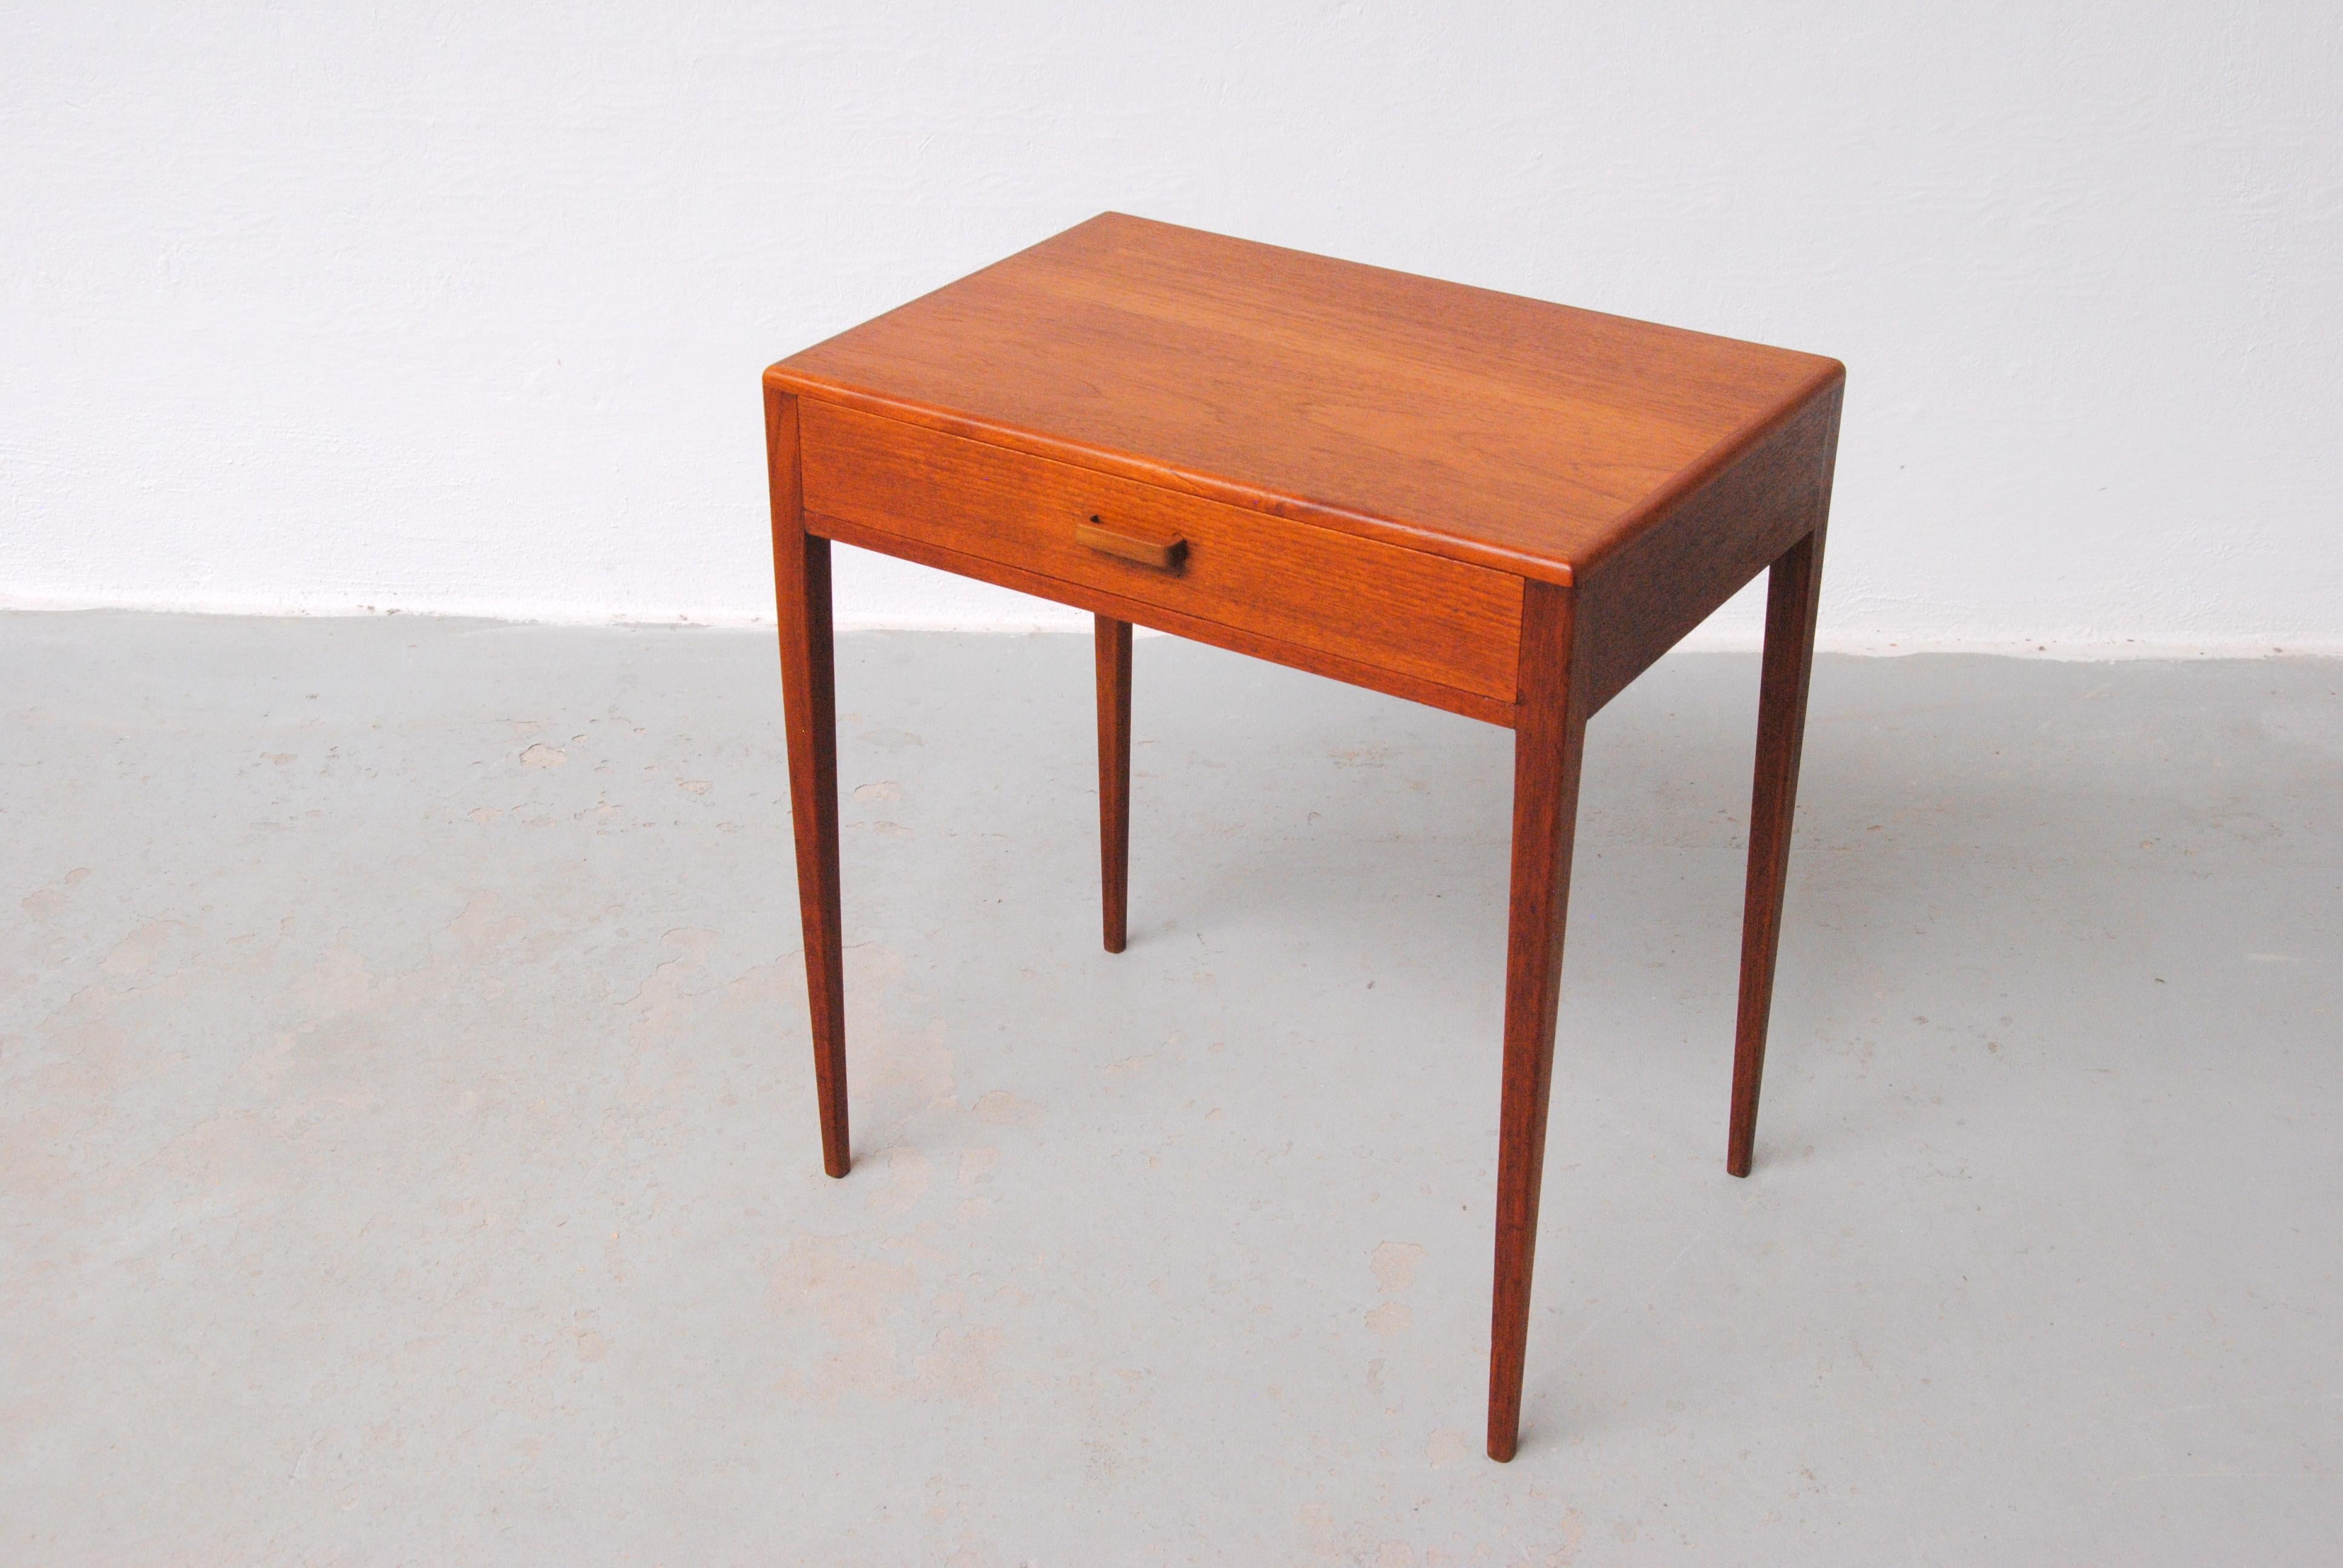 table d'appoint danoise en teck entièrement restaurée des années 1960.

La table d'appoint au design simple mais très élégant, avec son petit tiroir à sections pour vos petites pièces, présente une foule de détails - rien n'est simple ou accidentel,